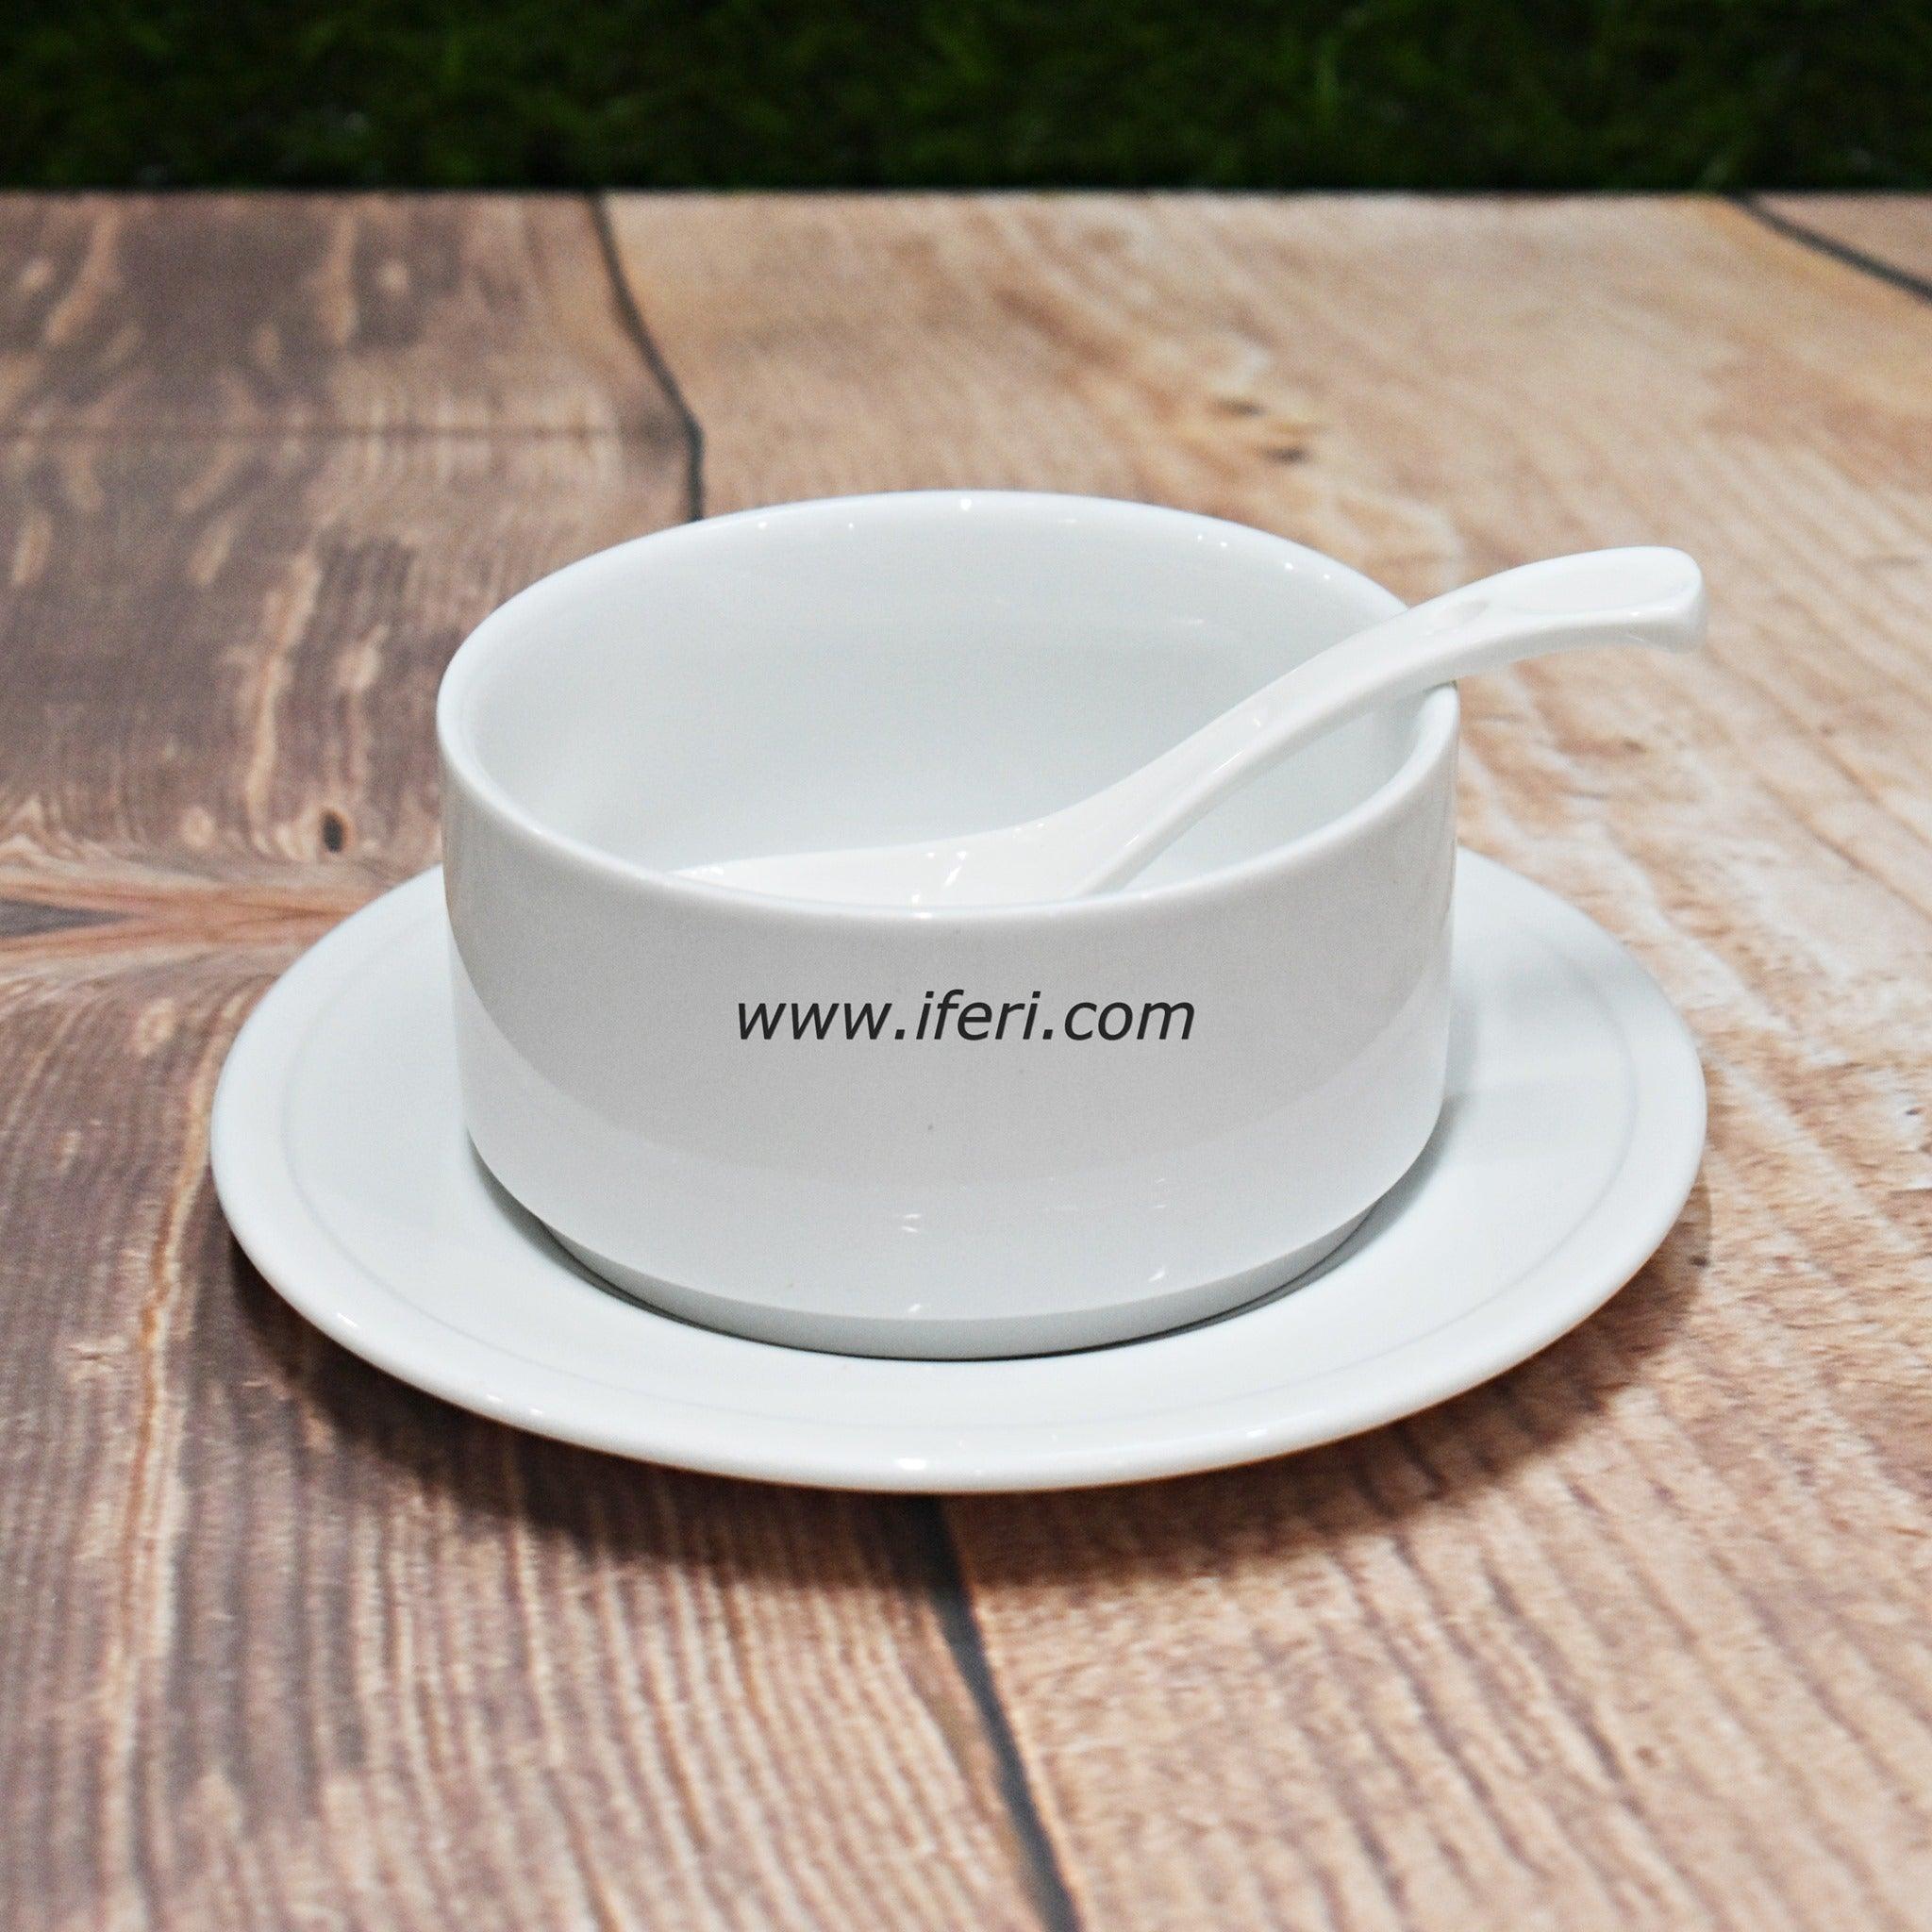 18 pcs White Ceramic Soup Set SN4860 Price in Bangladesh - iferi.com